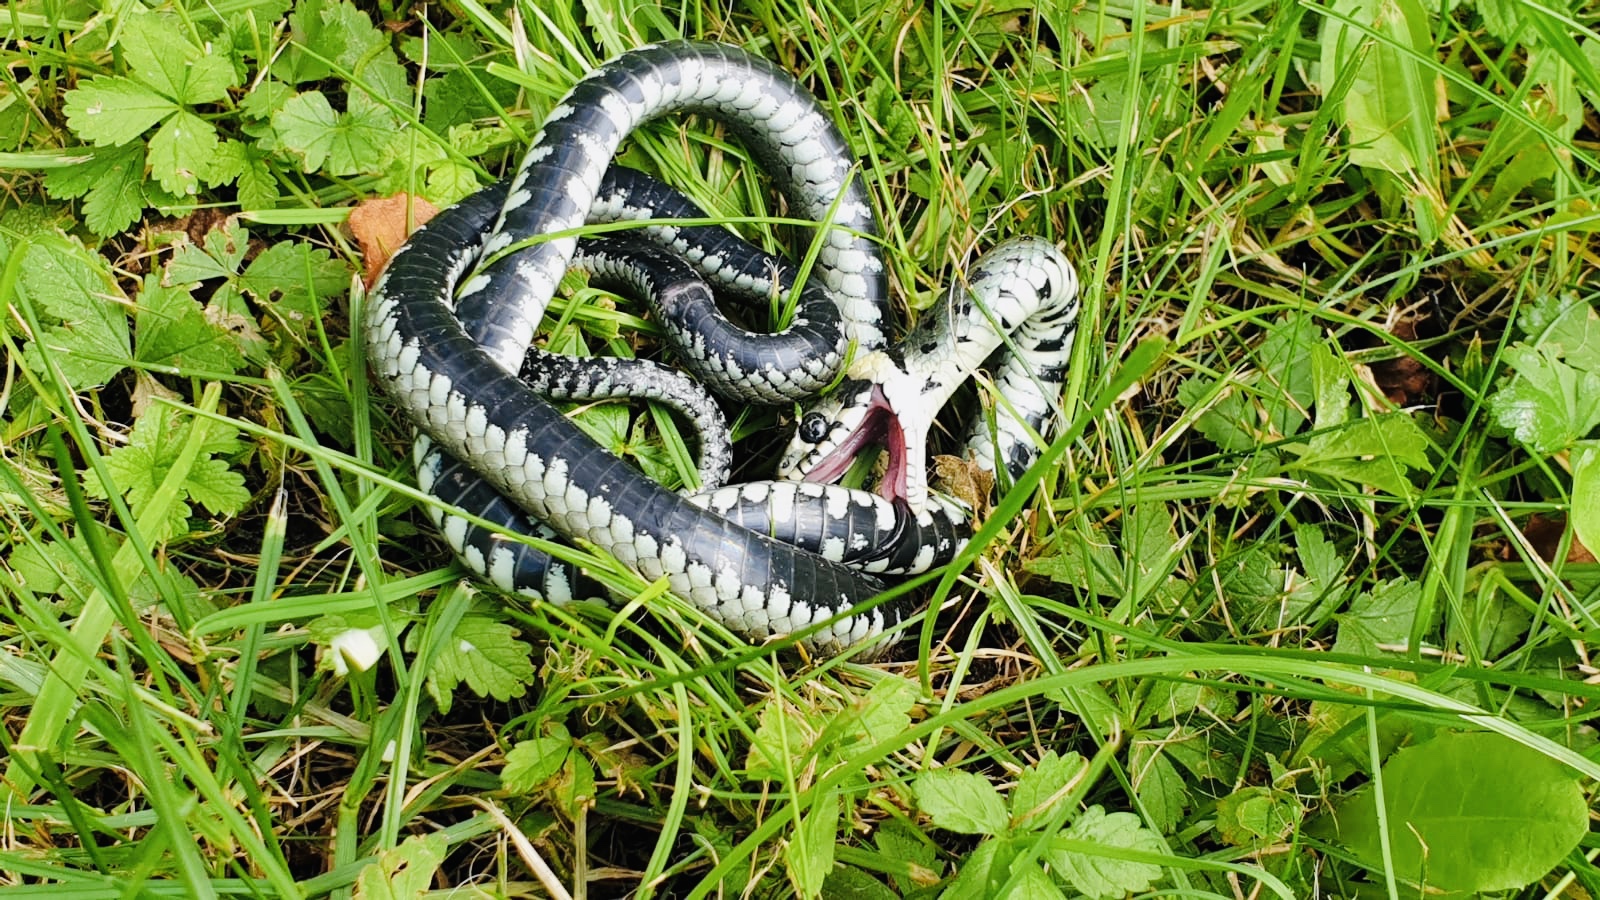 Snakebite